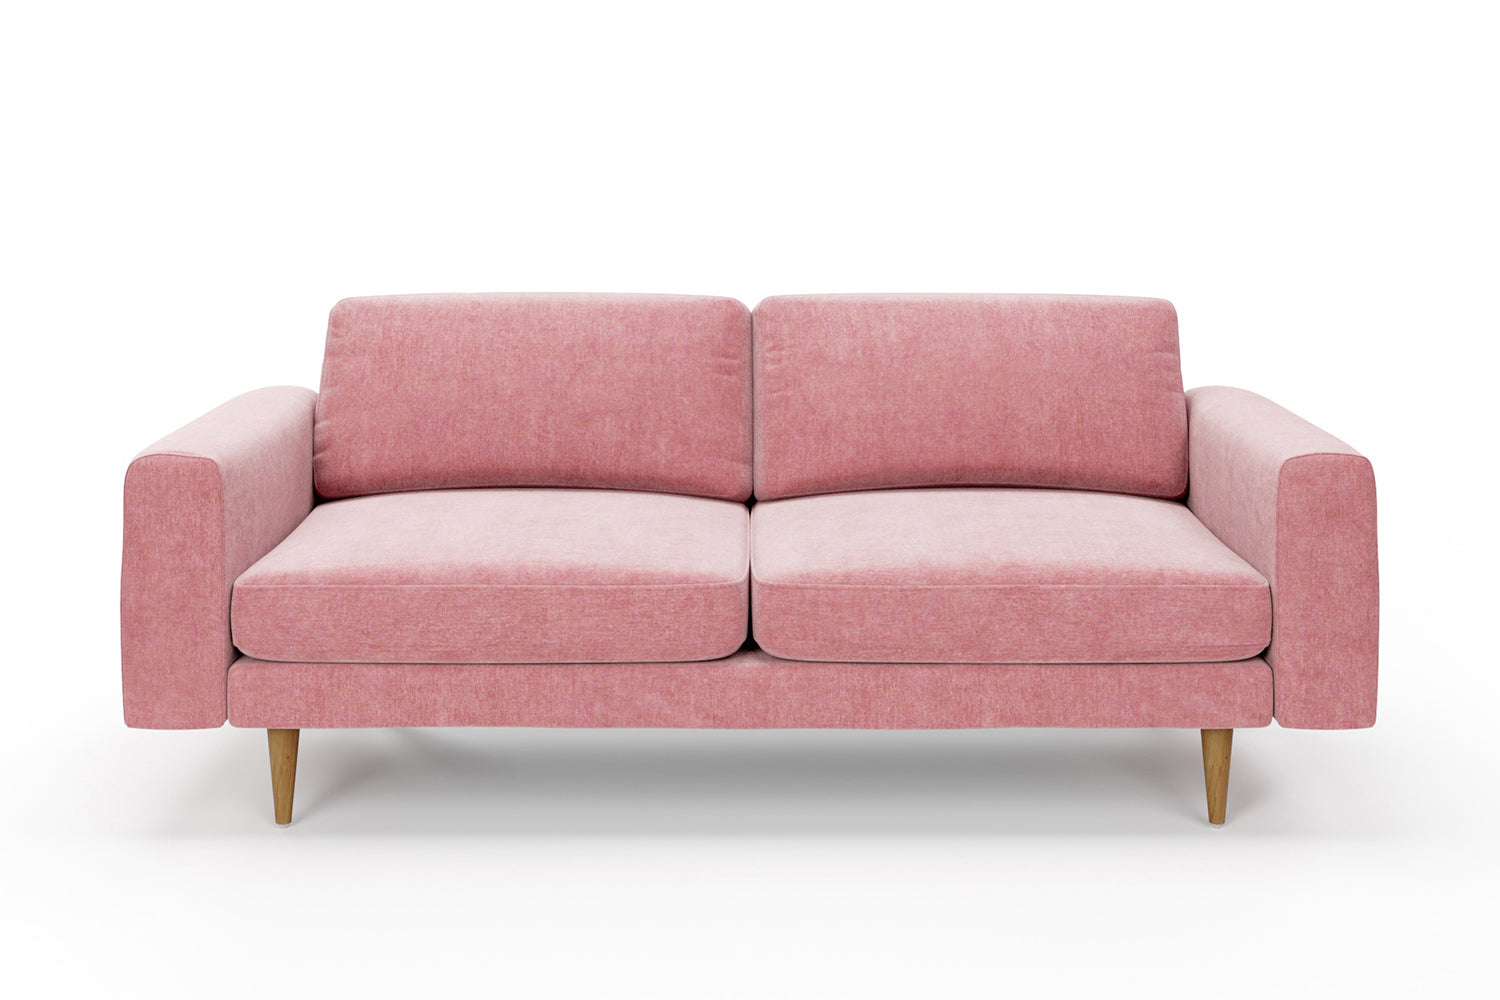 The Big Chill - 3 Seater Sofa - Blush Coral